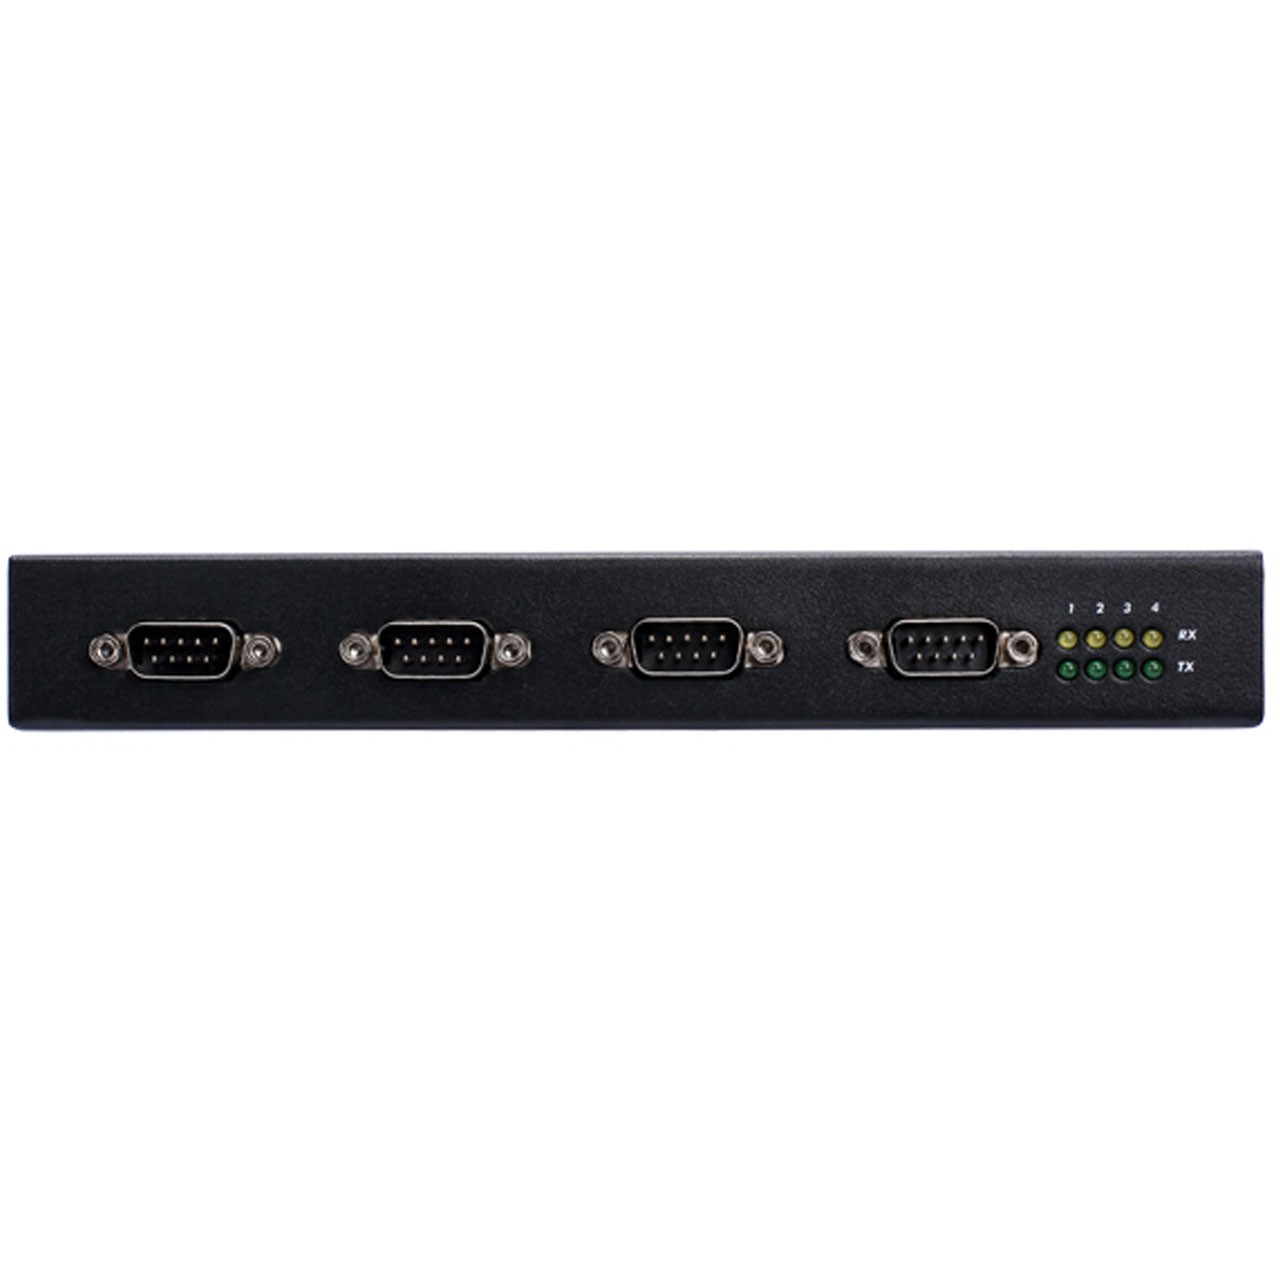 مبدل صنعتی USB به سریال 4 پورت IOCREST USB 2.0 to 4 Port Serial RS232 Adapter IO-U24232C-4S